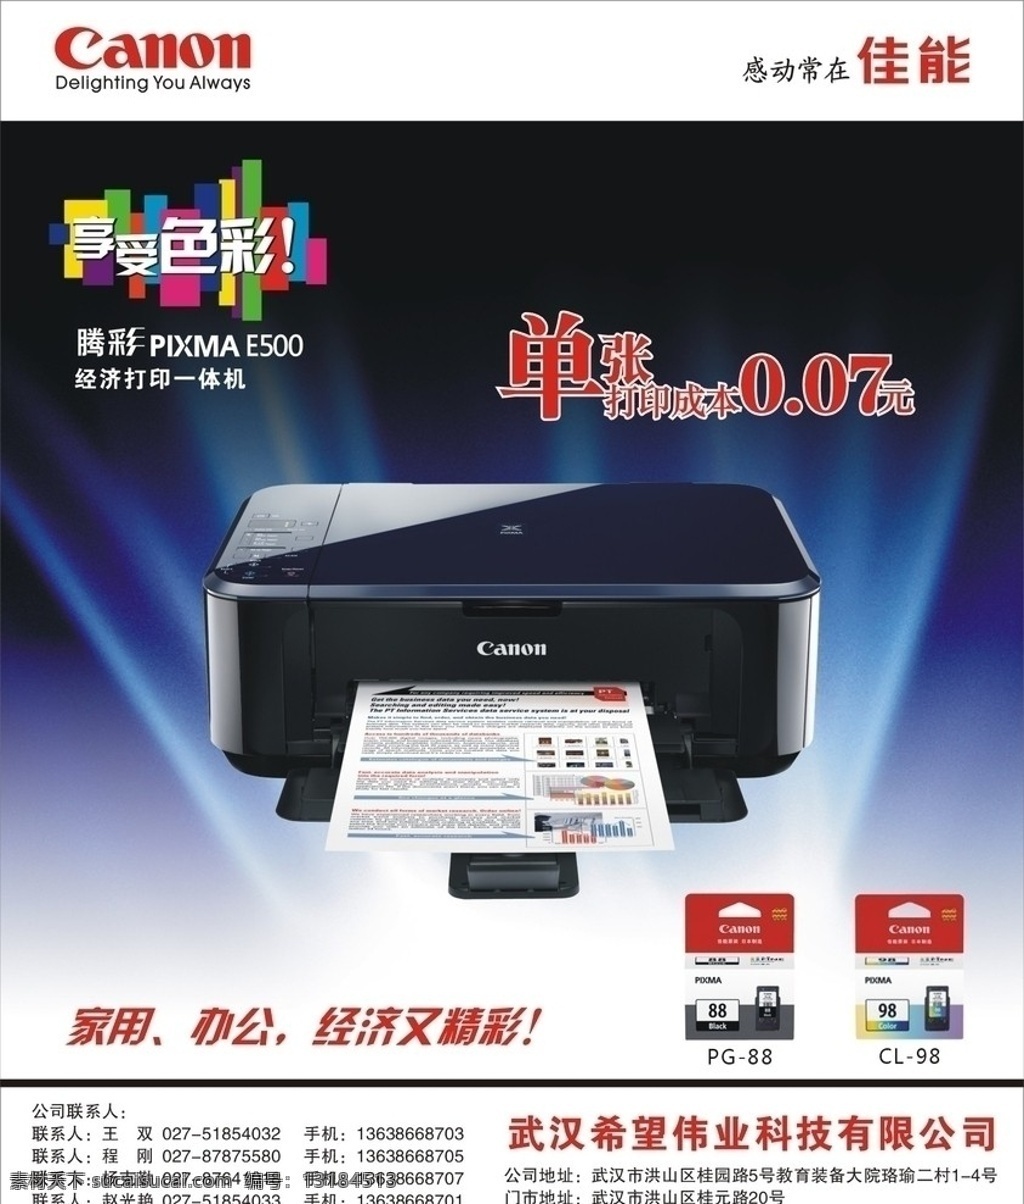 佳能打印机 腾彩e500 佳能 喷墨 打印机 墨盒 希望科技 dm宣传单 矢量